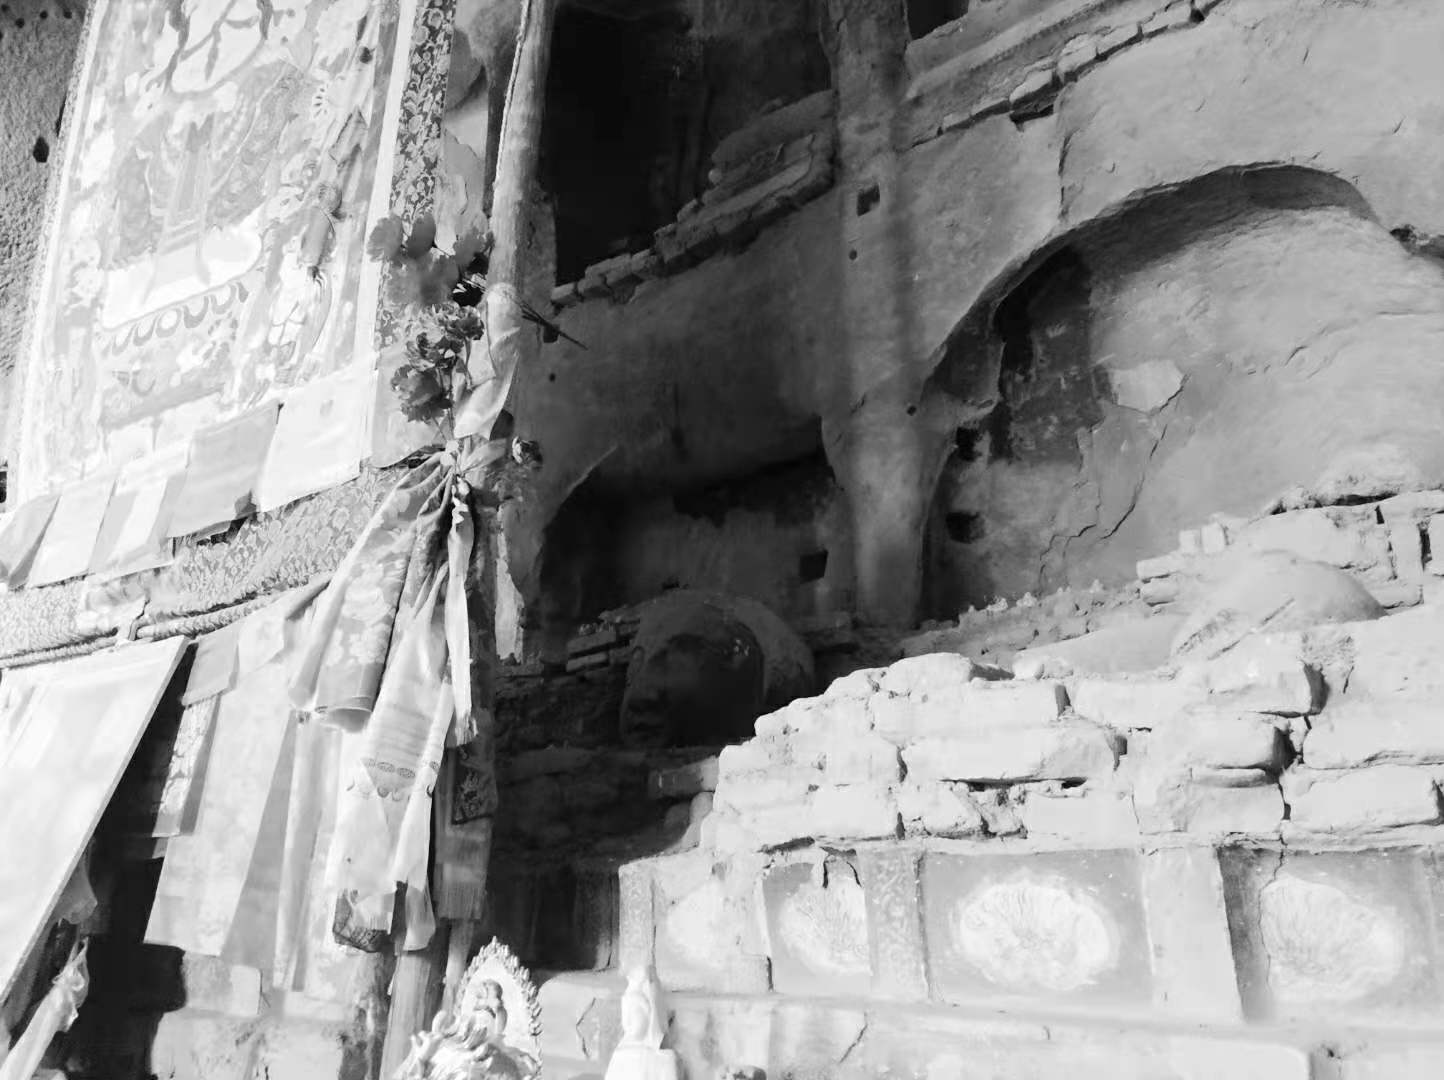 马蹄寺石窟内被画挡住的部分，台子上摆放着一颗佛头，身子没了。